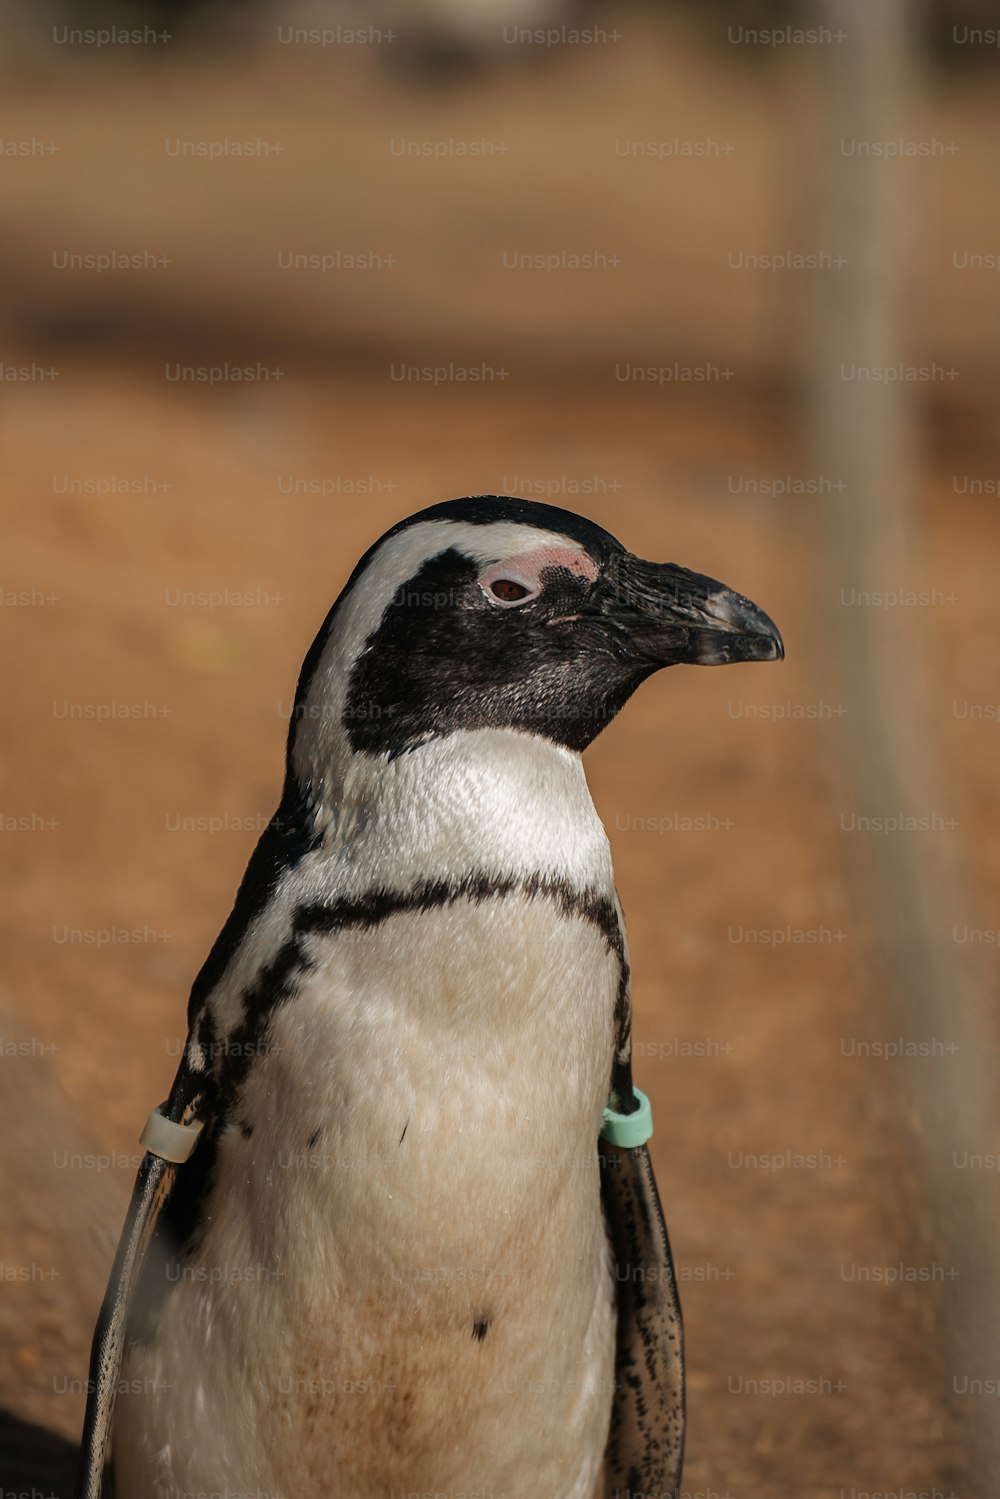 Un primer plano de un pingüino en un suelo de tierra